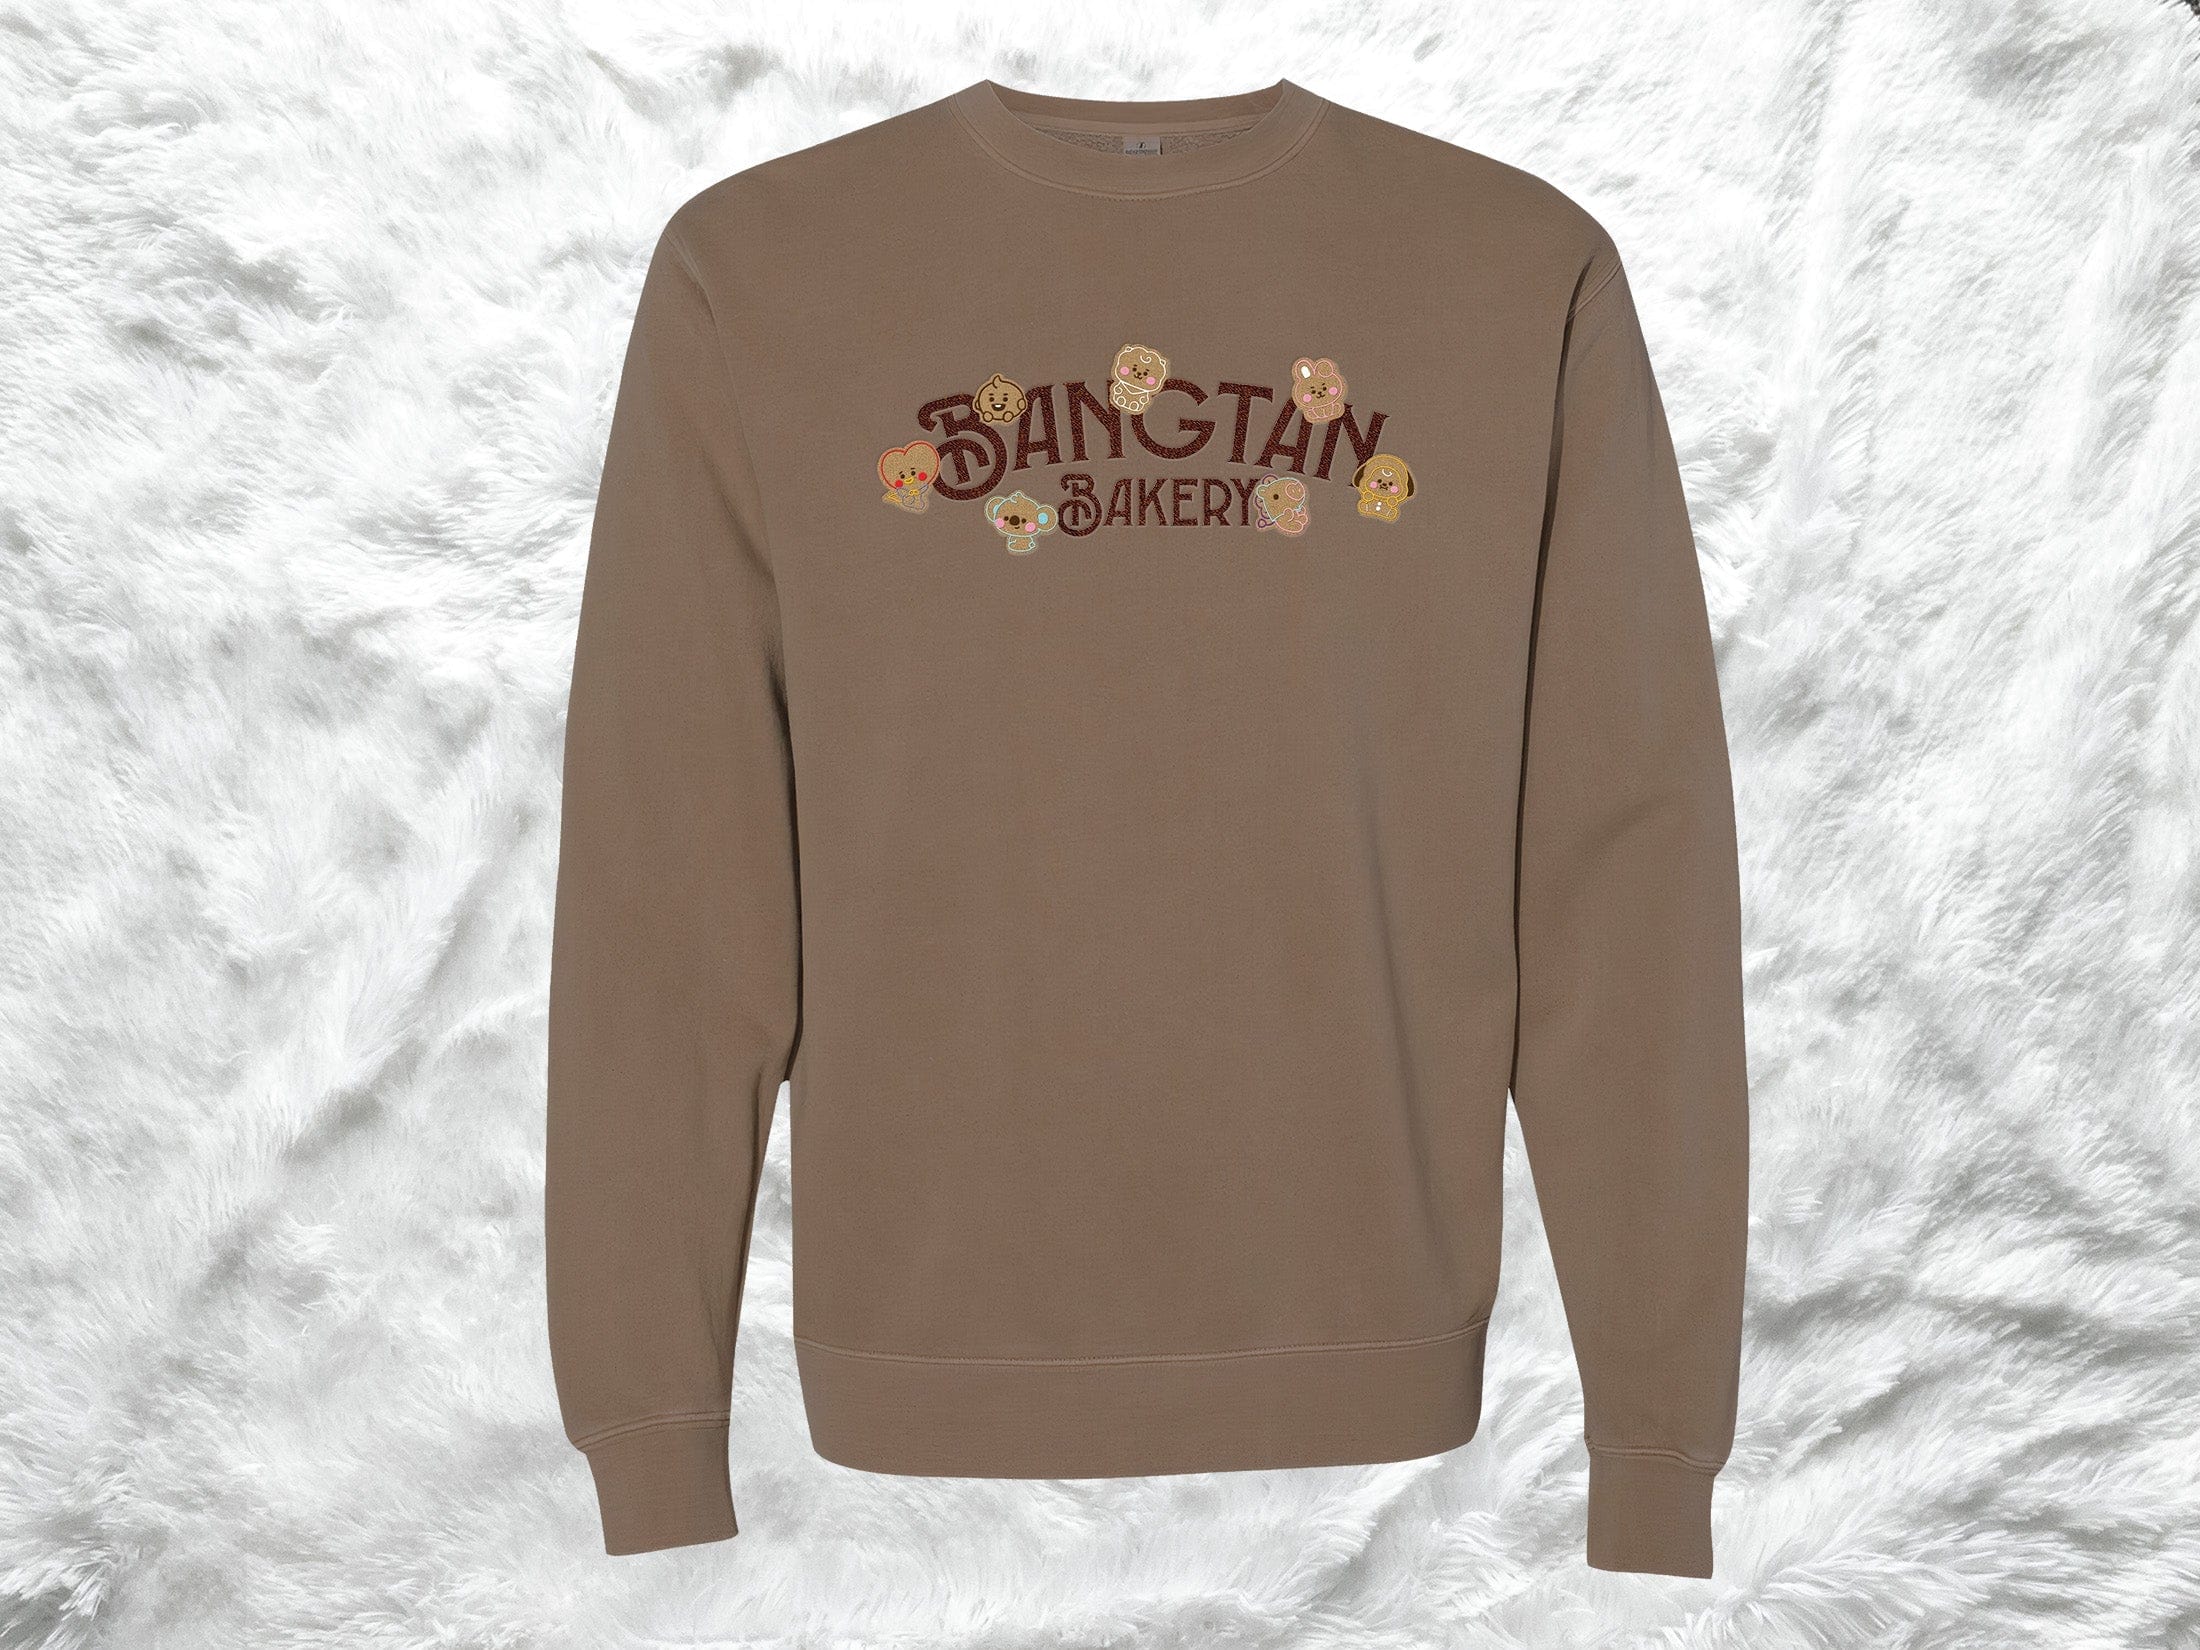 Full Bangtan Bakery Christmas Sweatshirts